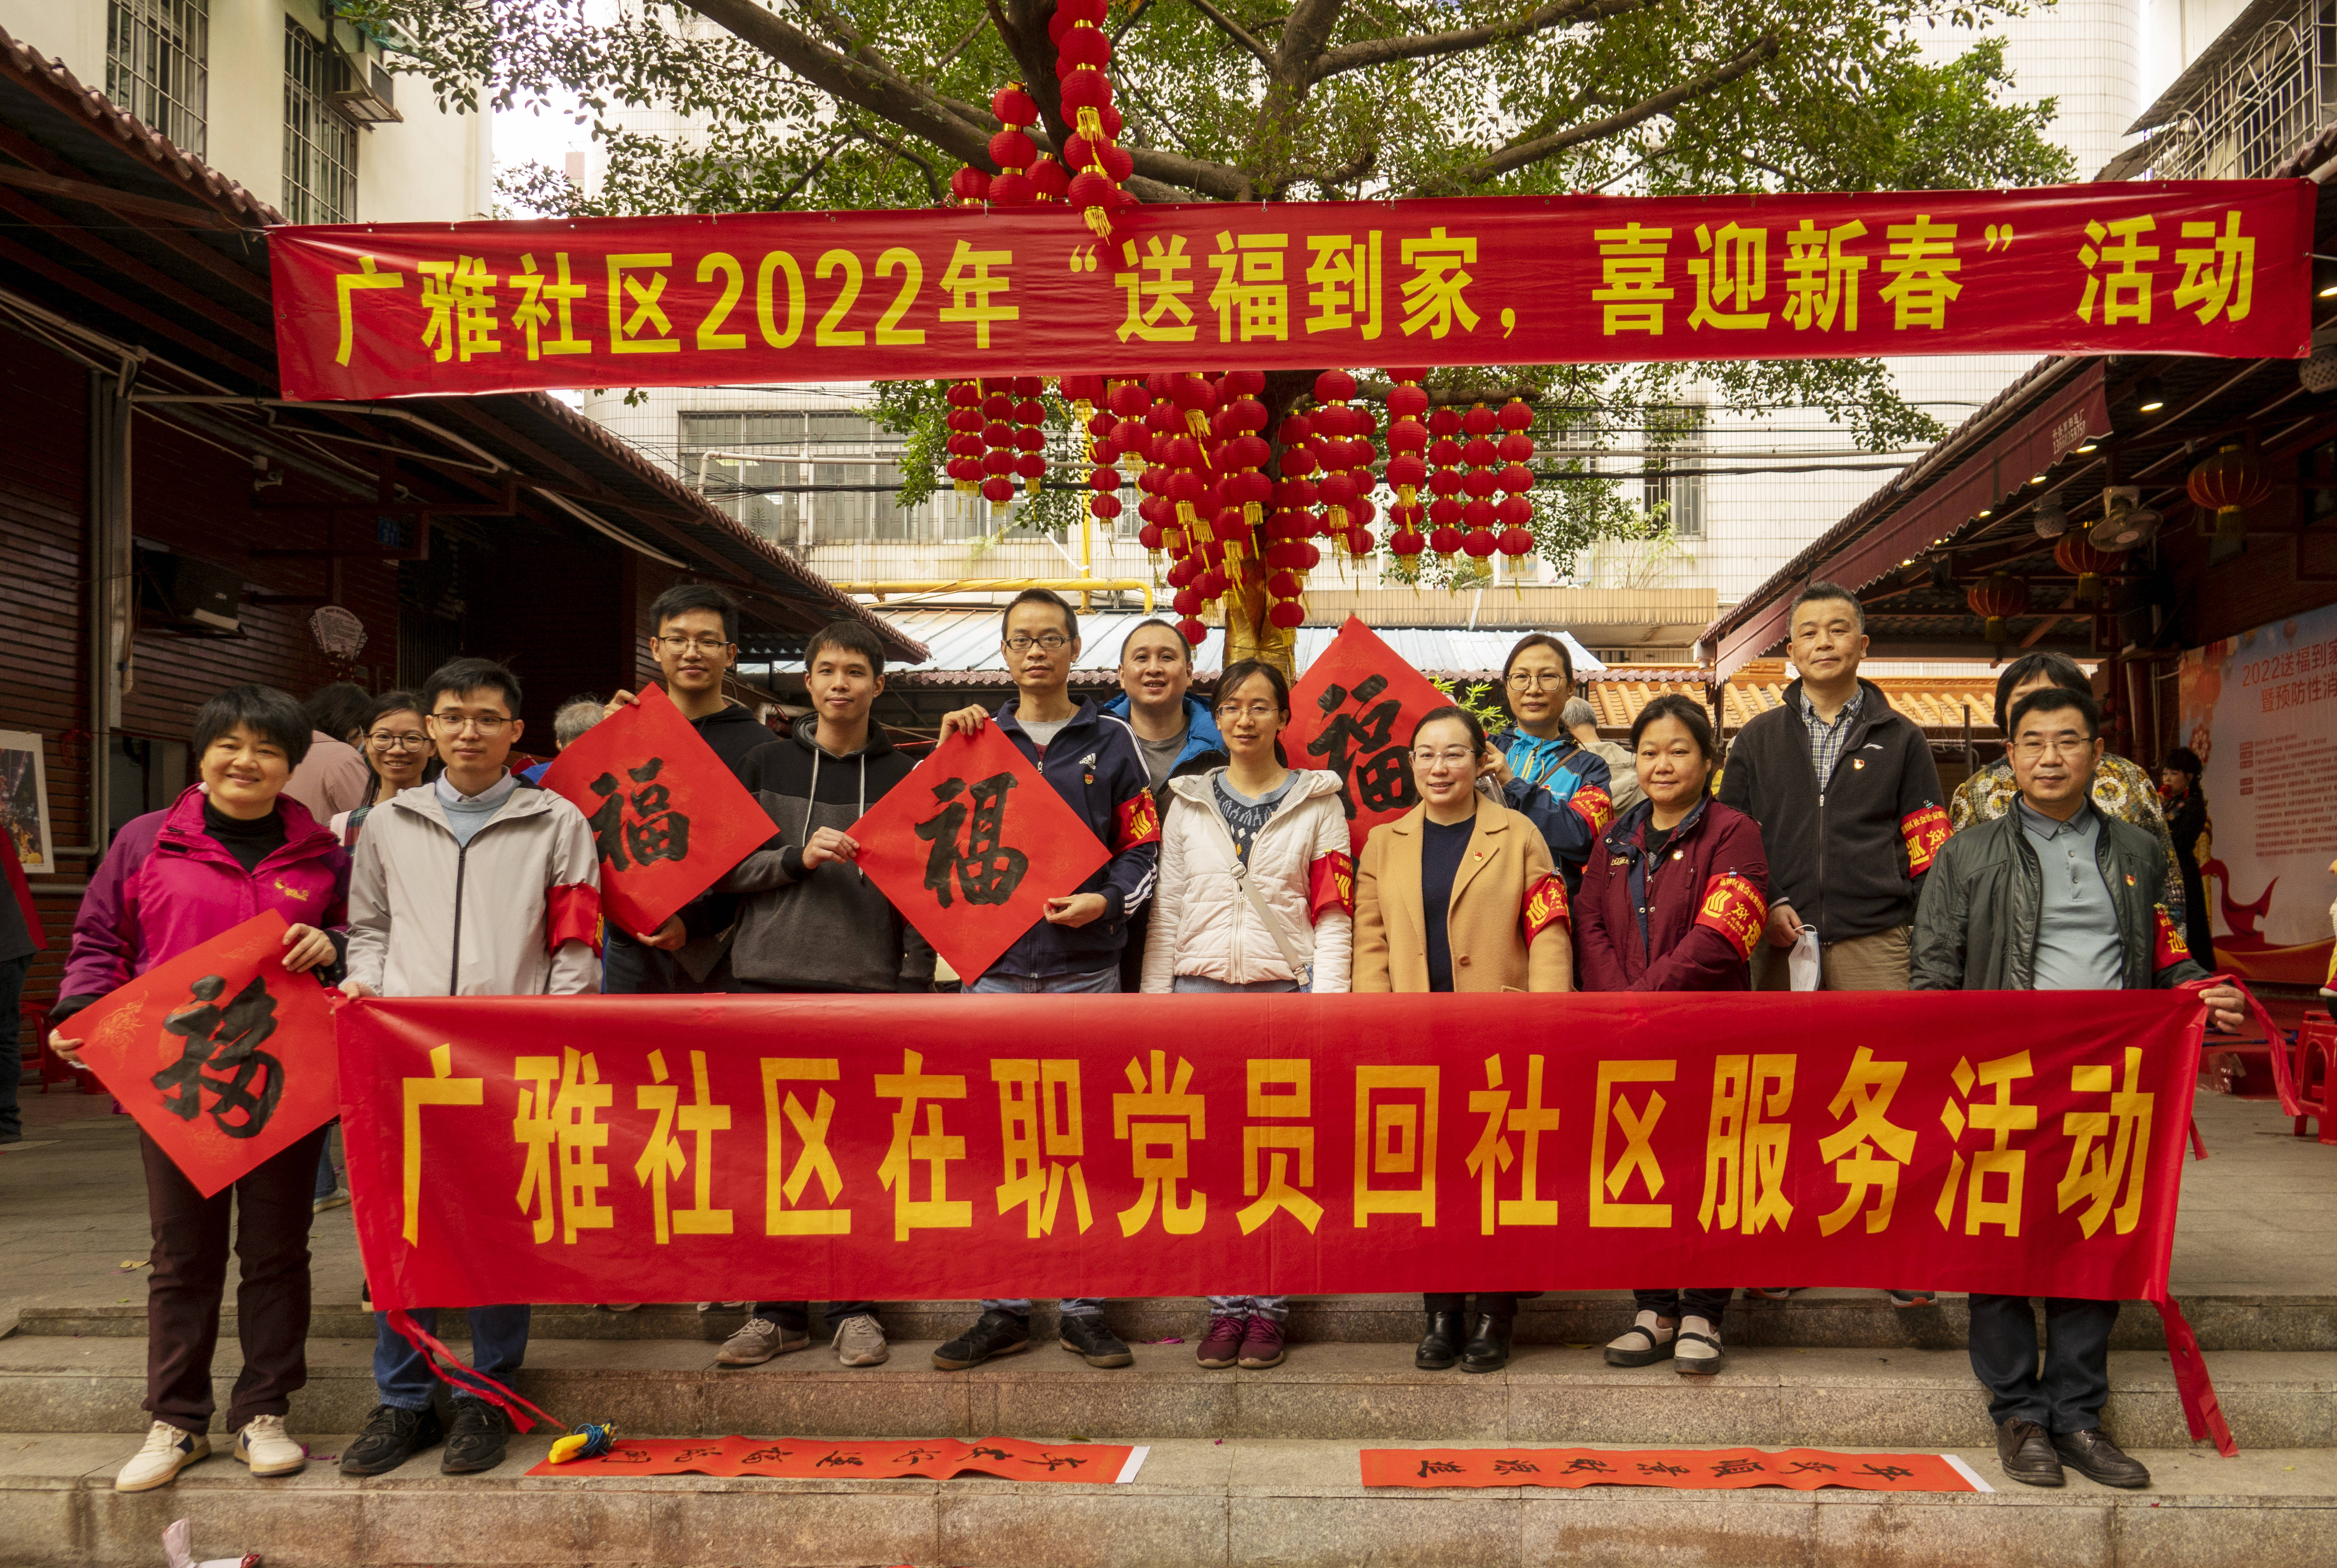 广雅文化街举办“送福到家 喜迎新春”· 中医药科普活动受欢迎